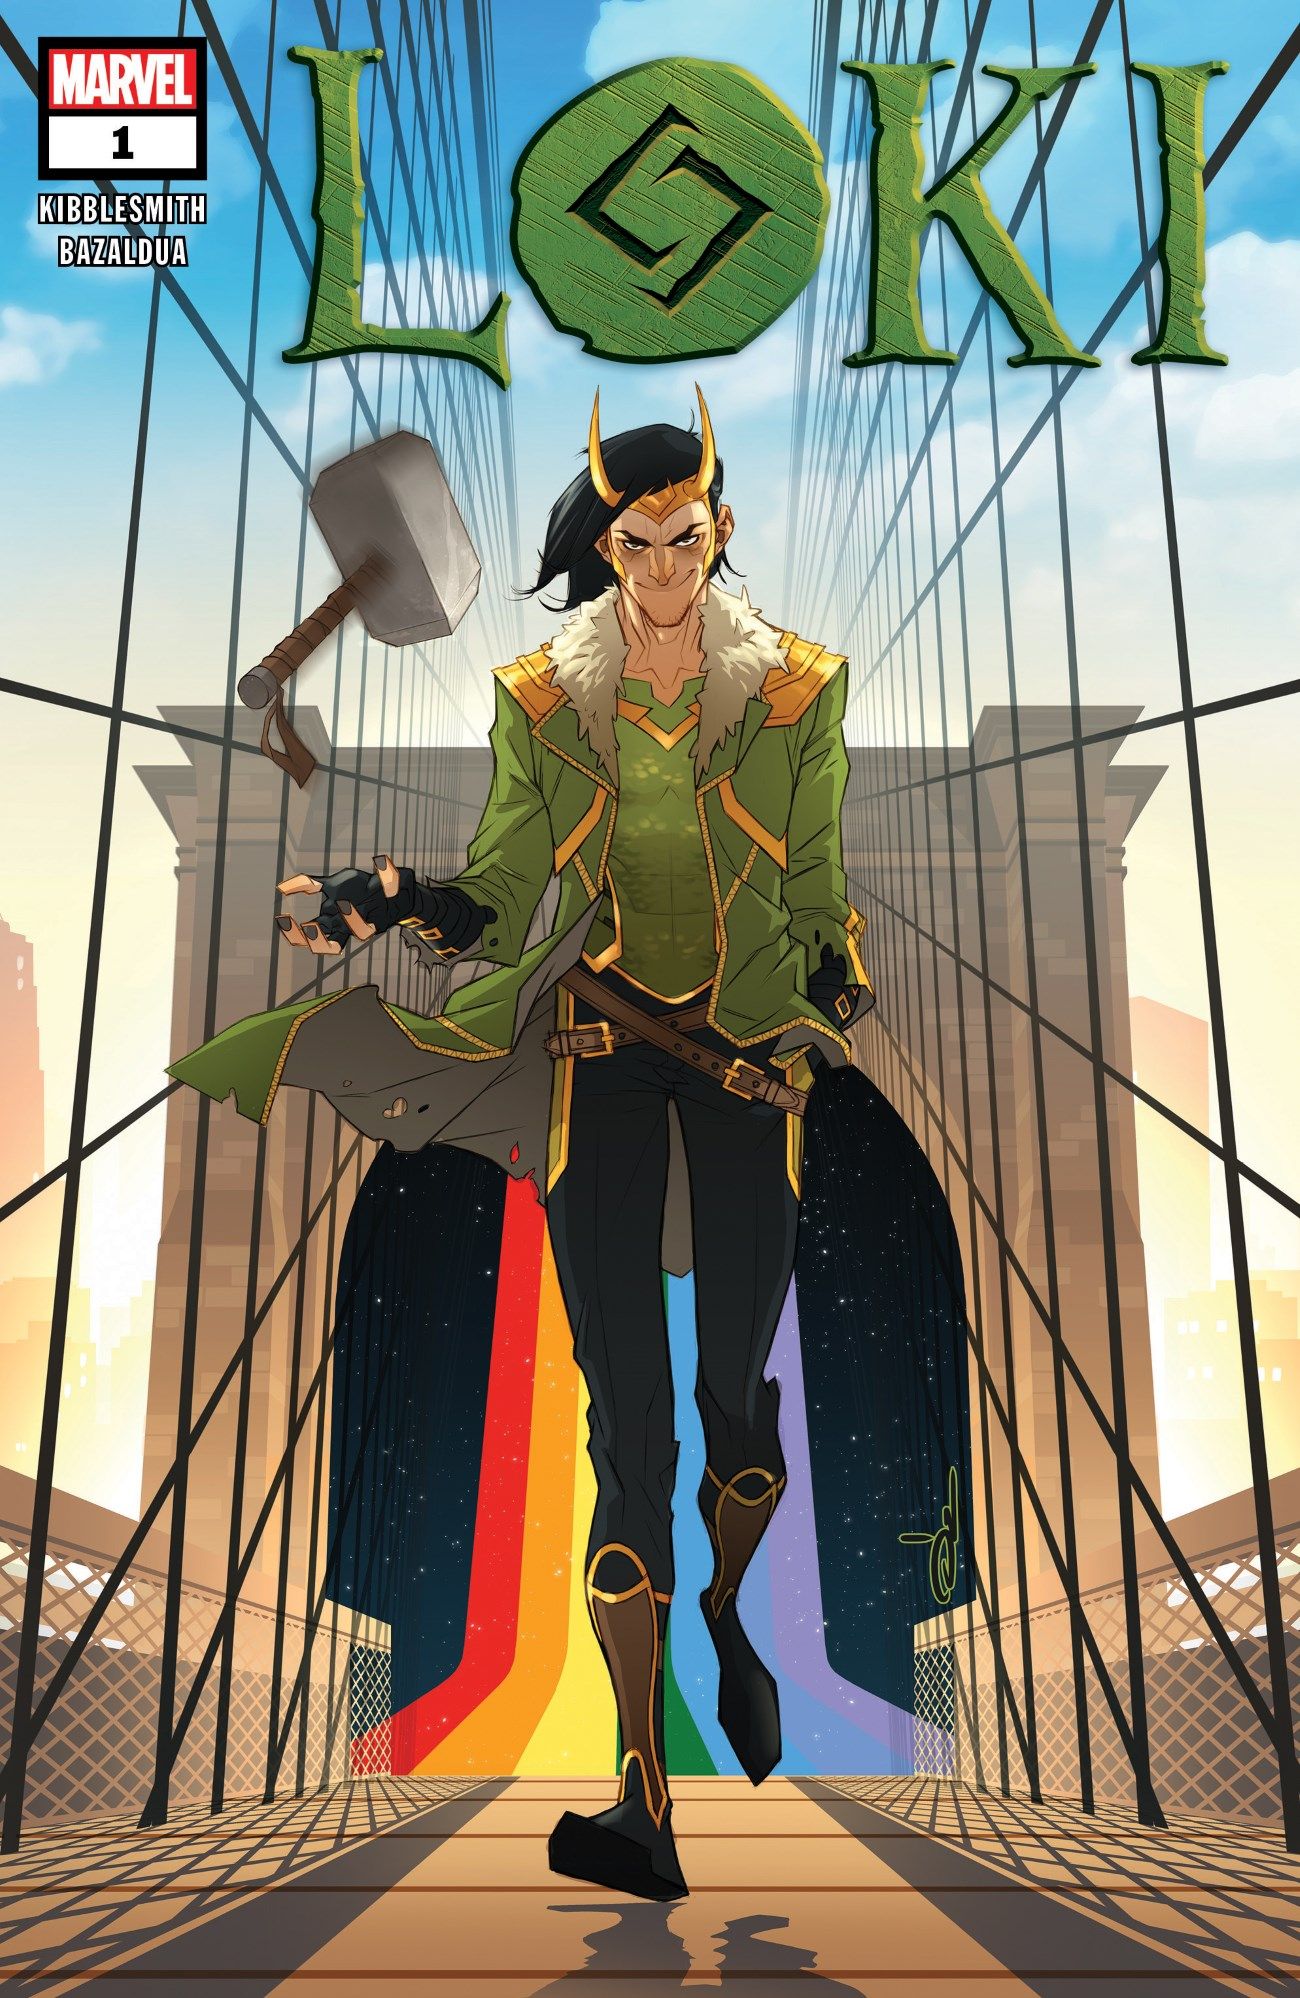 Loki New Marvel Comic Cover Art